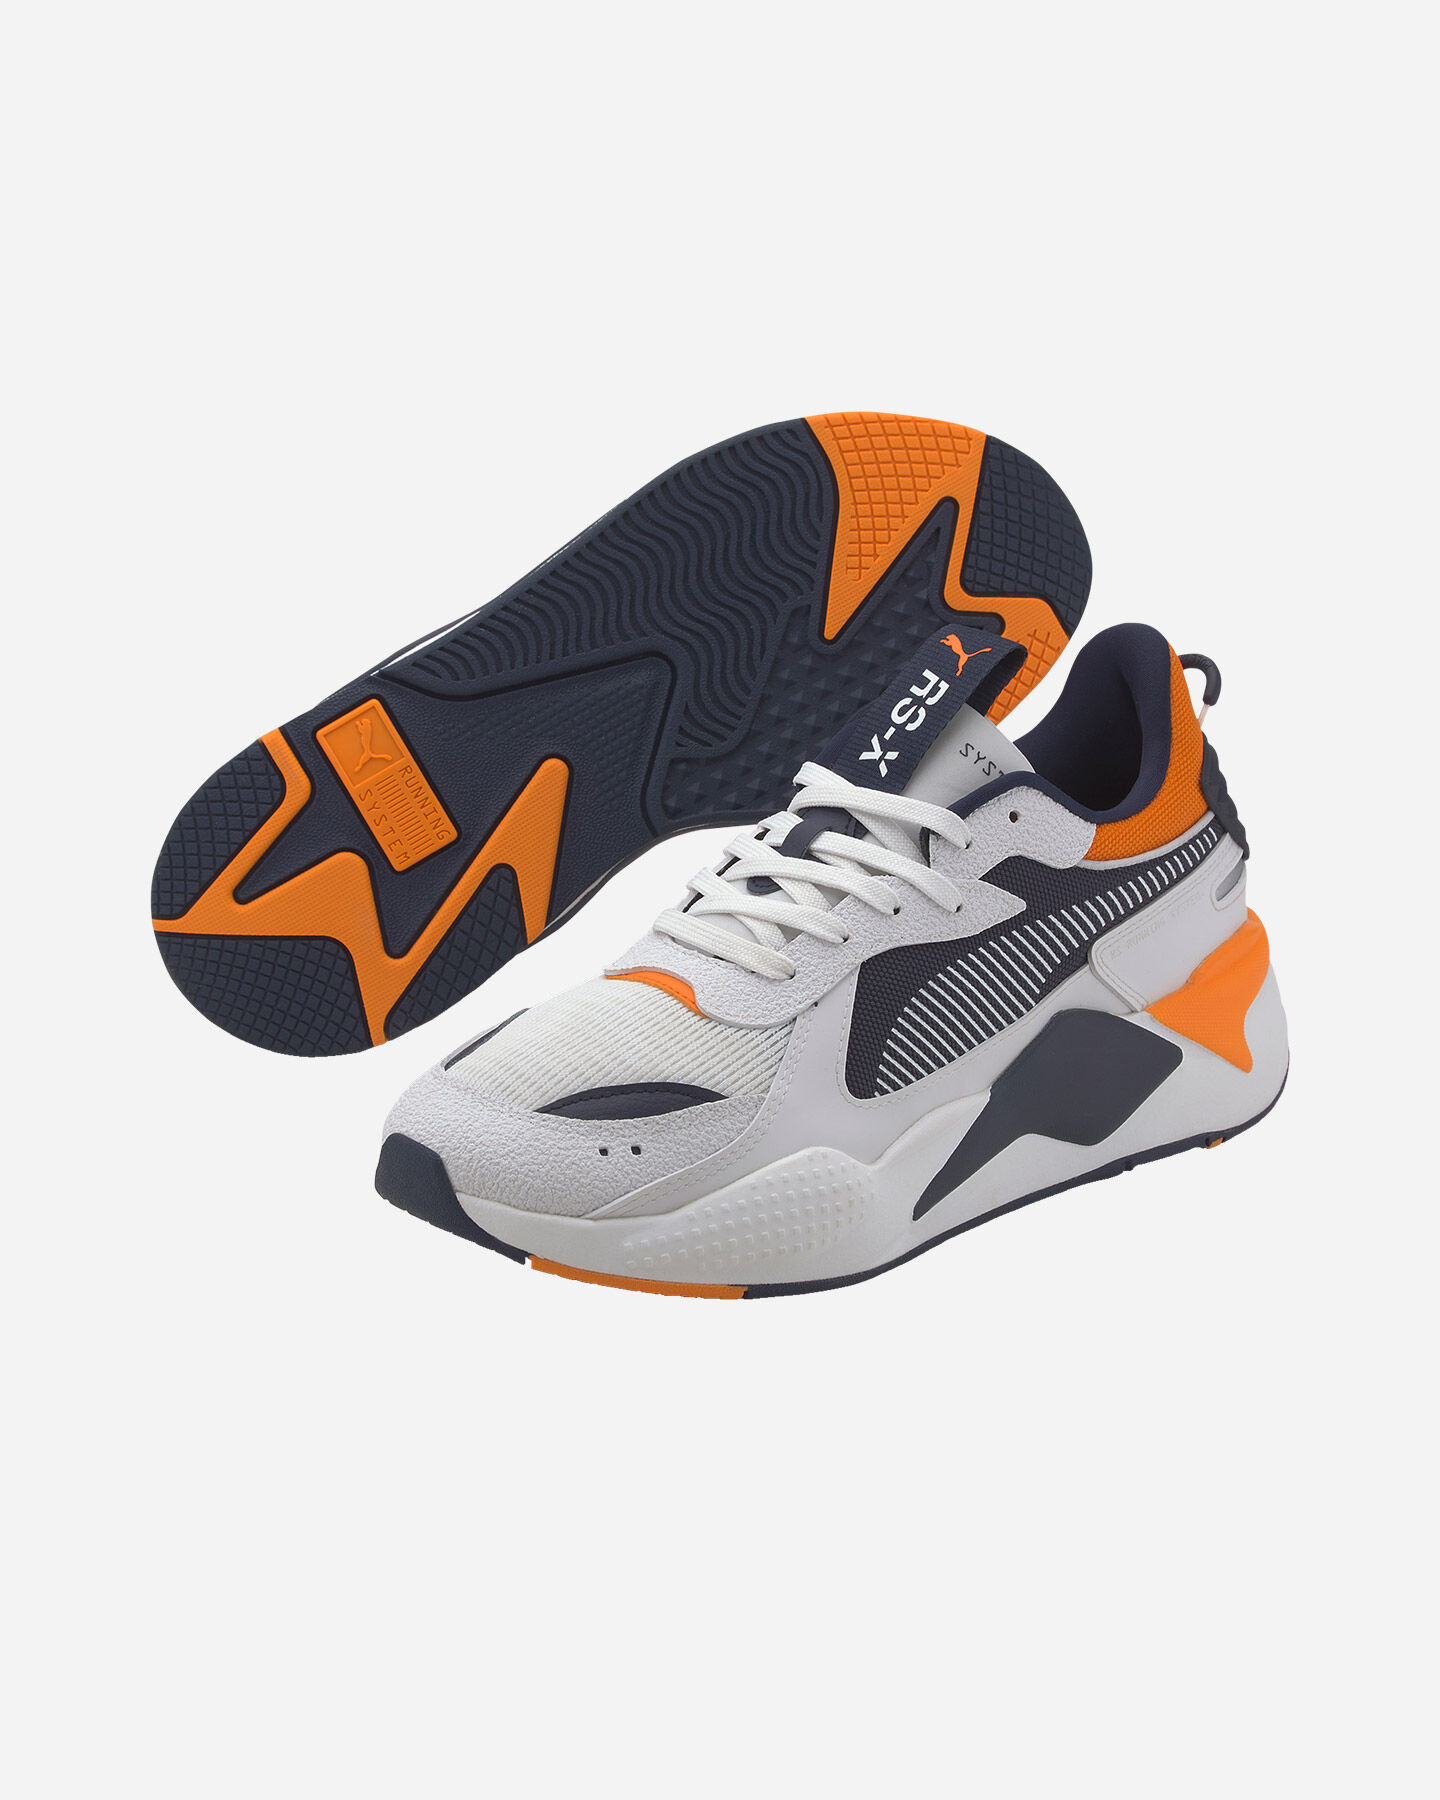  Scarpe sneakers PUMA RS-X HARD DRIVE M S5234213|08|6 scatto 1